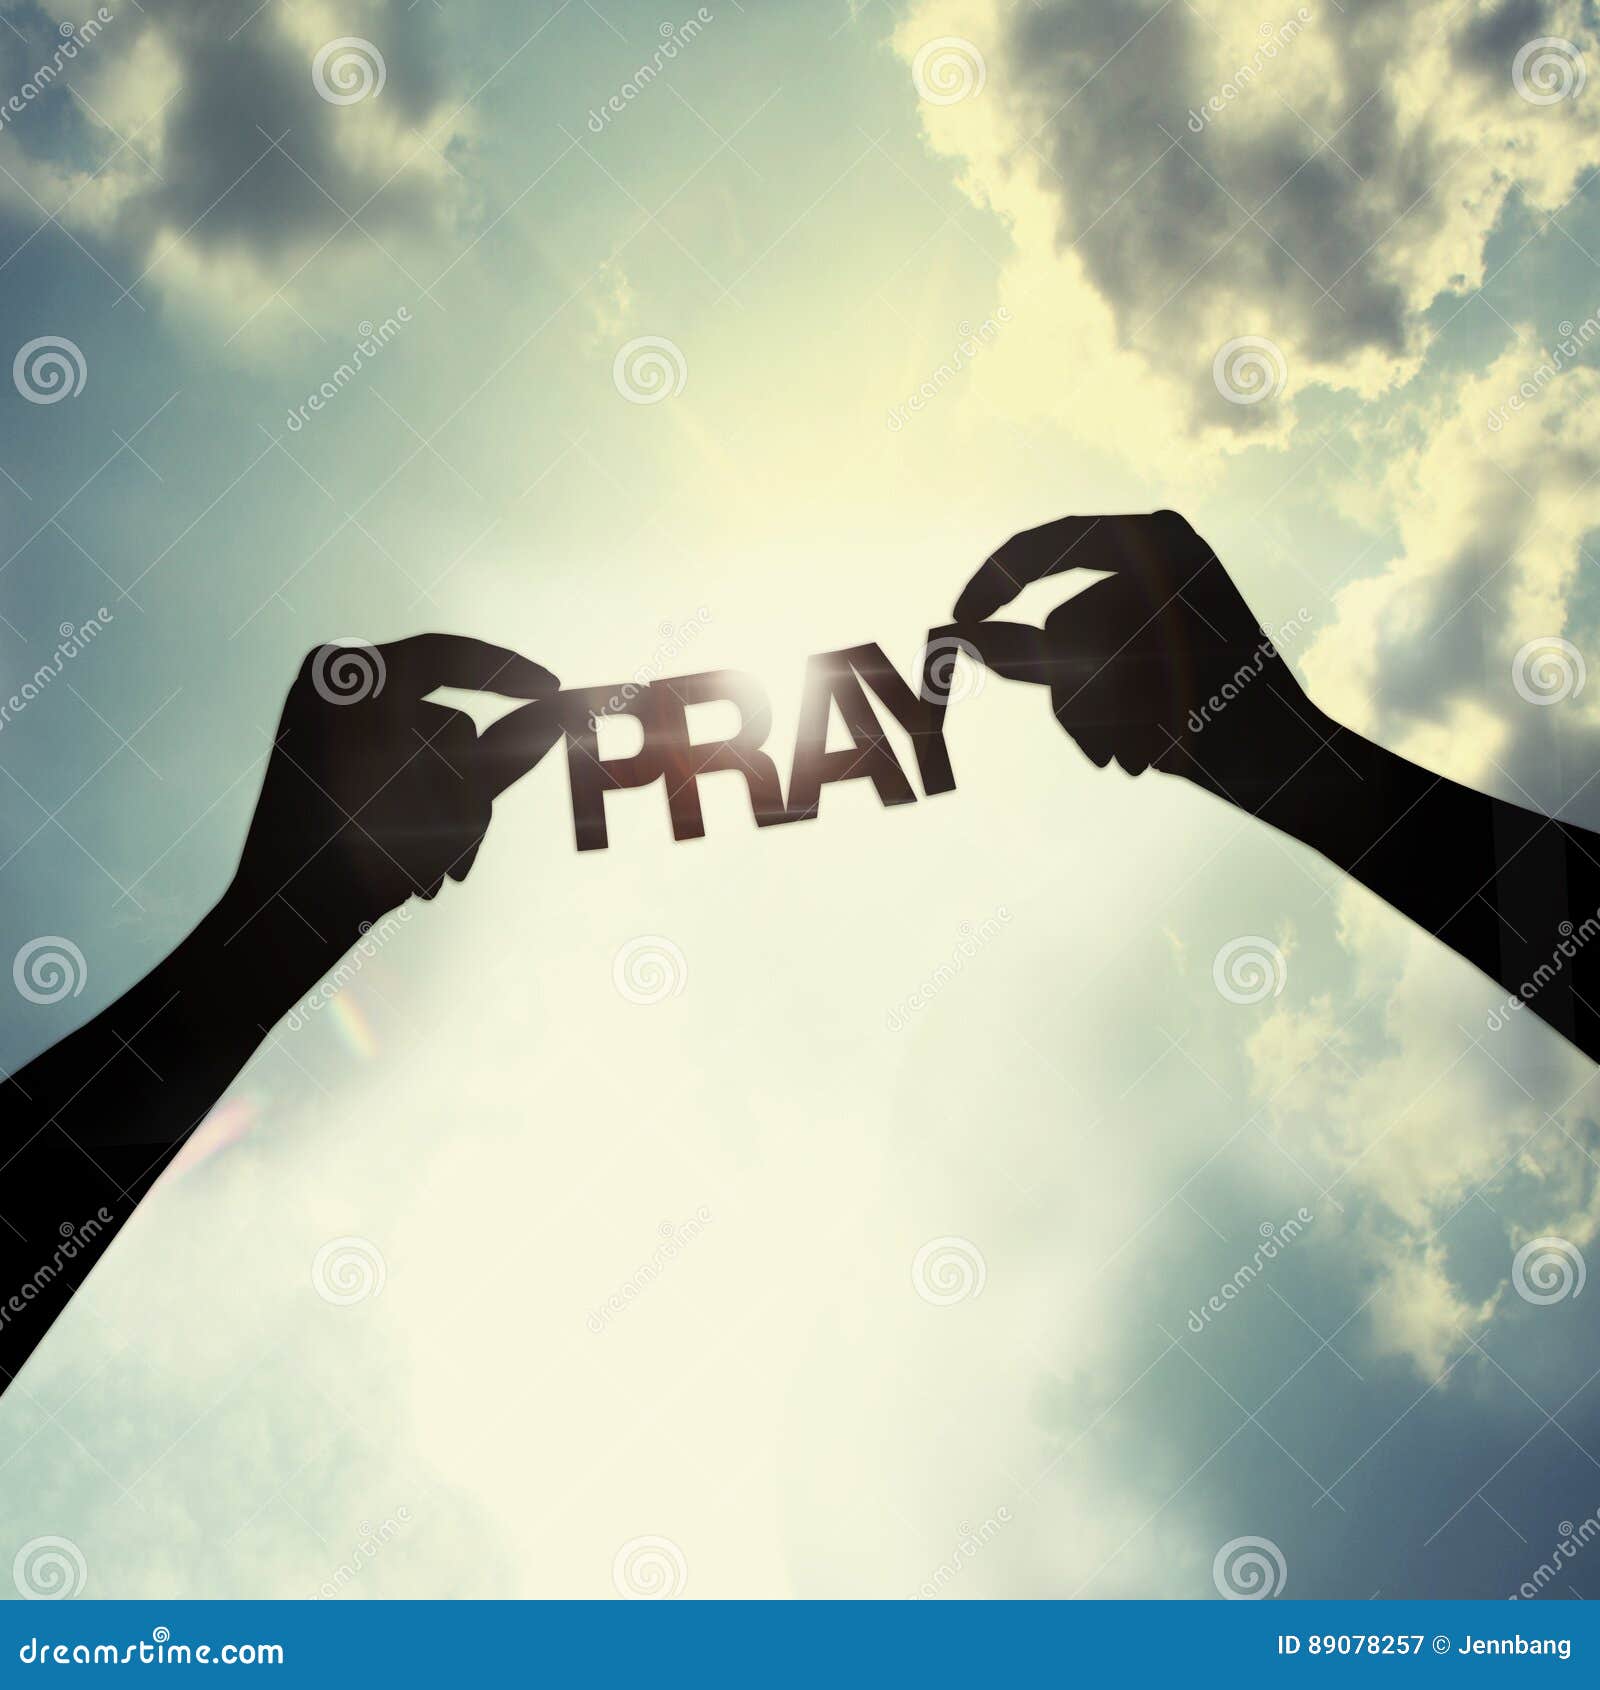 let pray together,